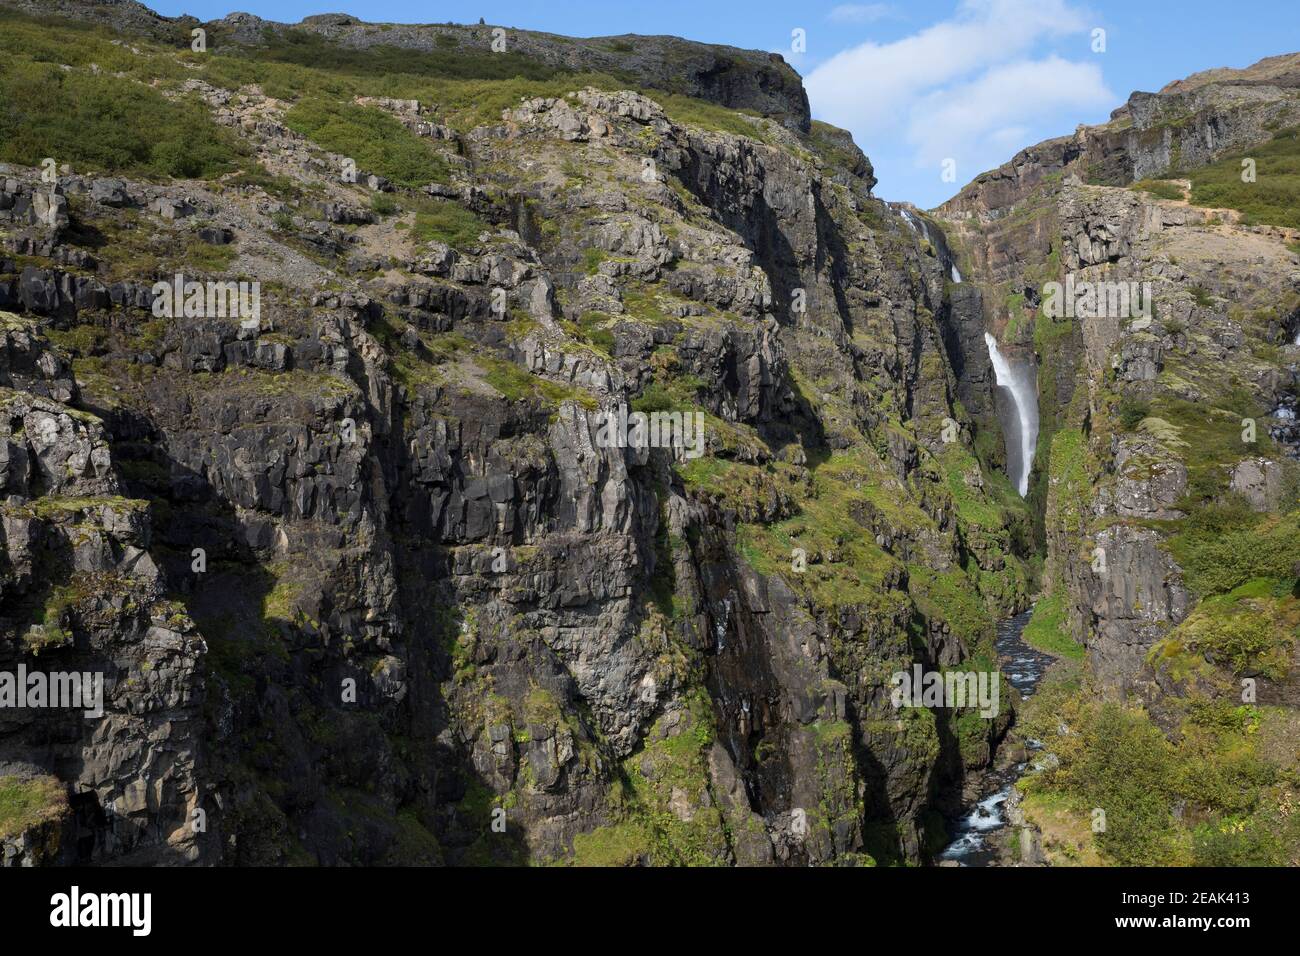 Glymur, Wasserfall auf Island, 196 Meter Höhe, Wasserfall des Flusses, Baches Botnsá im Westen Islands, Schlucht, waterfall in the west of Iceland Stock Photo